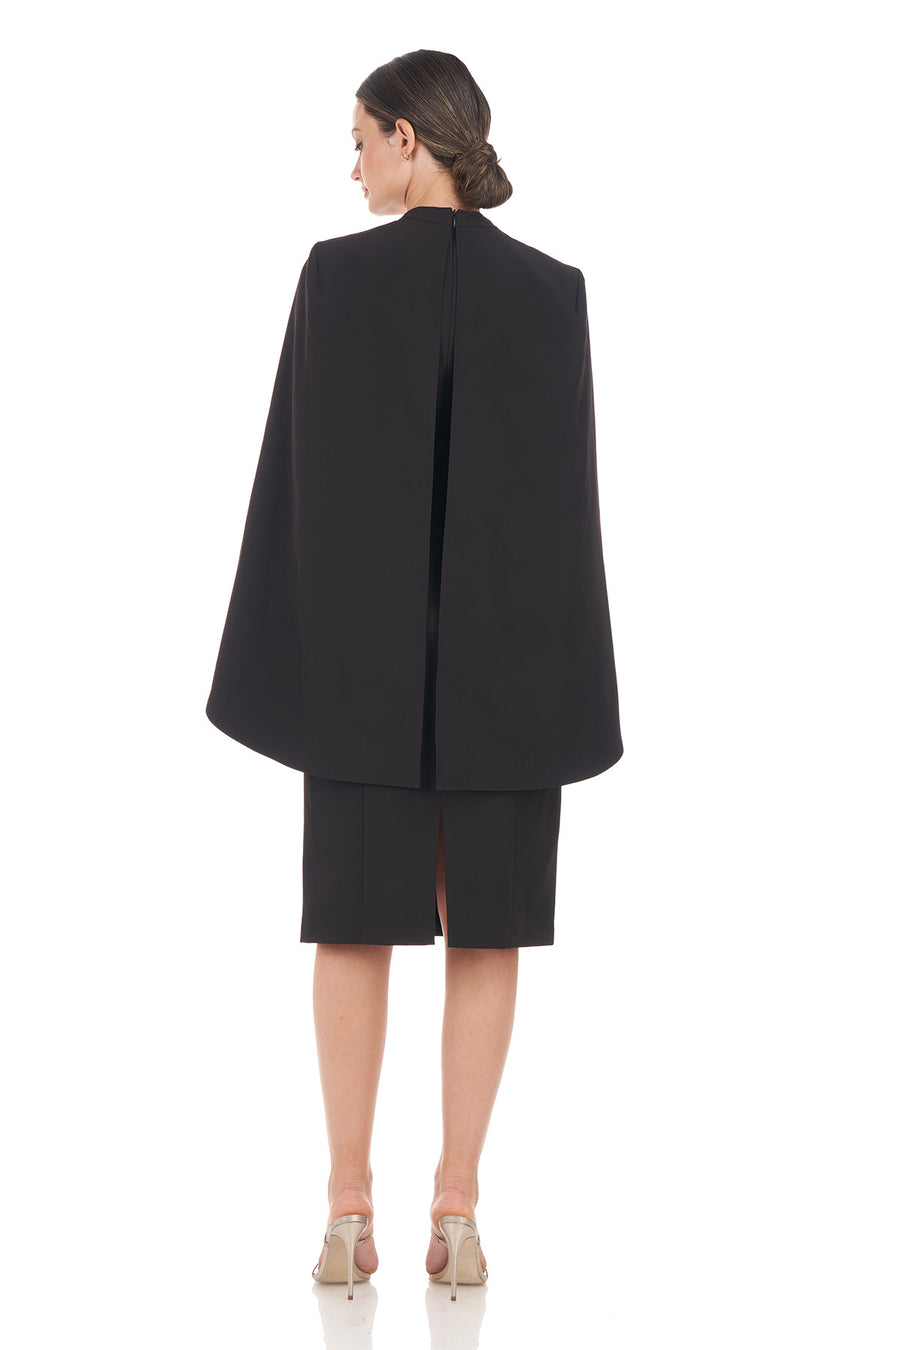 Mila Capelet Knee Length Dress